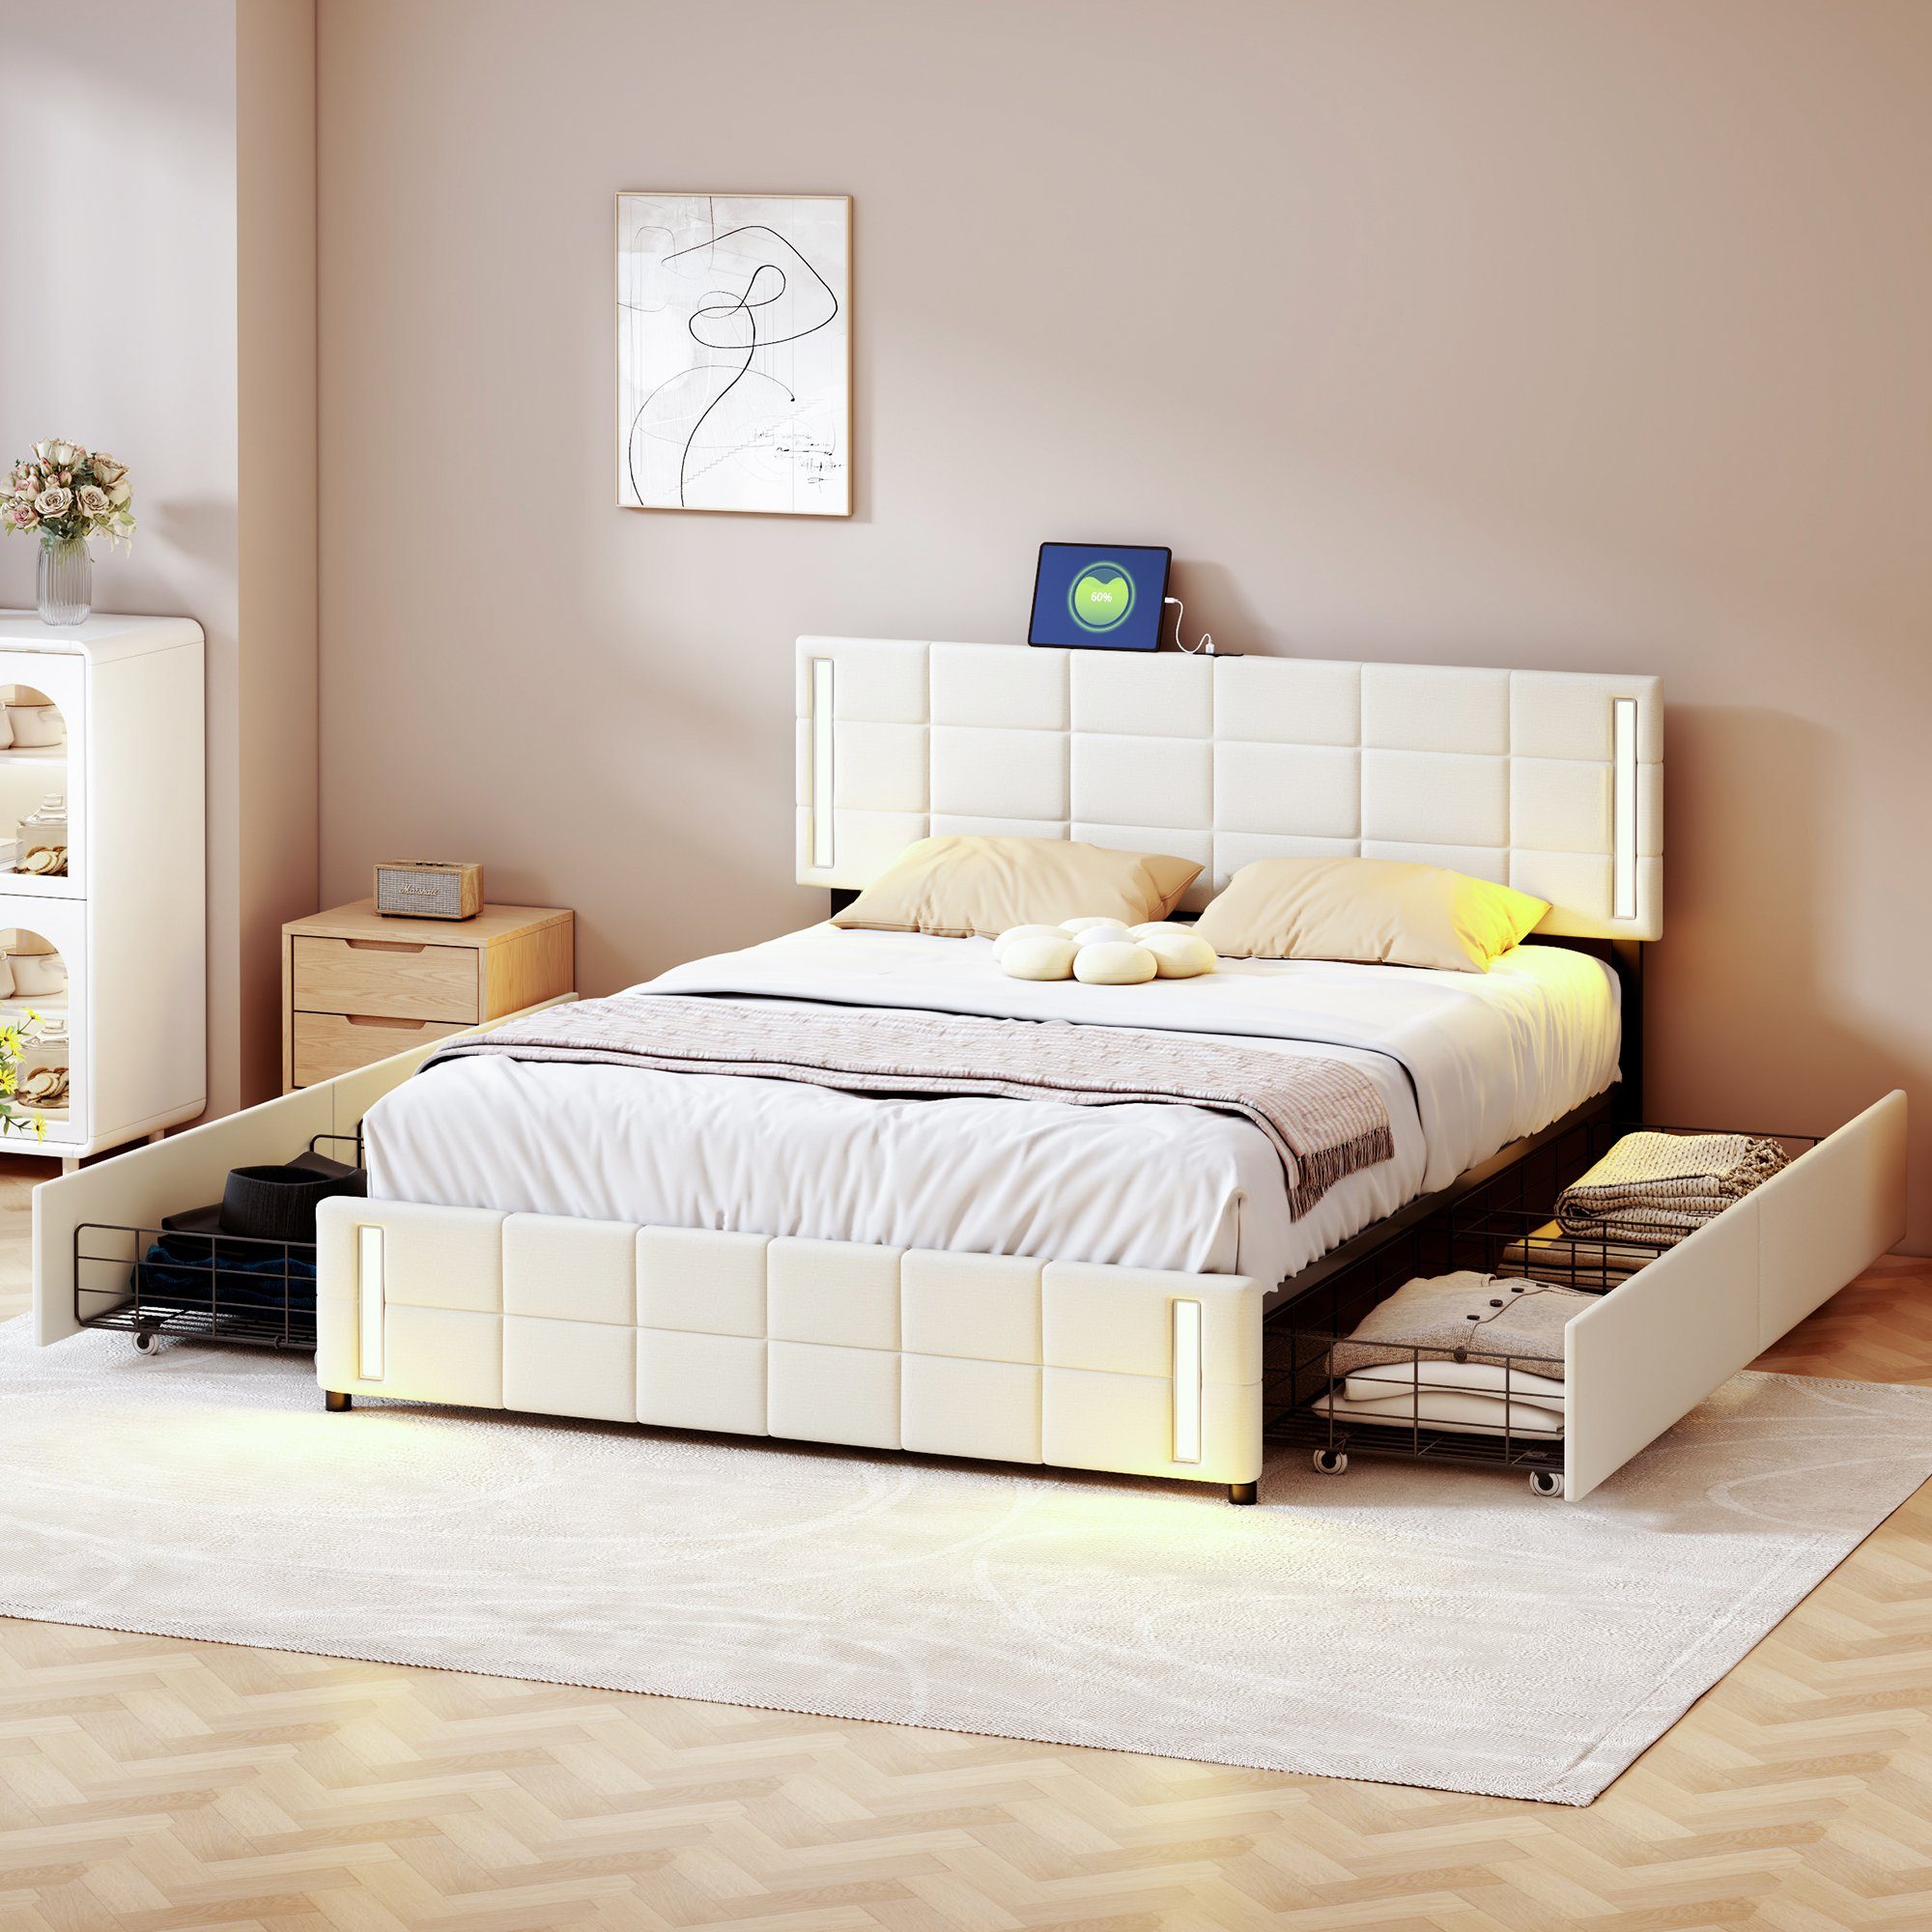 REDOM mit Kinderbett Gästebett 4 LED-Lichtsteckdose gepolstert, Ohne Matratze Schubladen), beige Polsterbett Doppelbett Polsterbett (Leinen 140*200cm